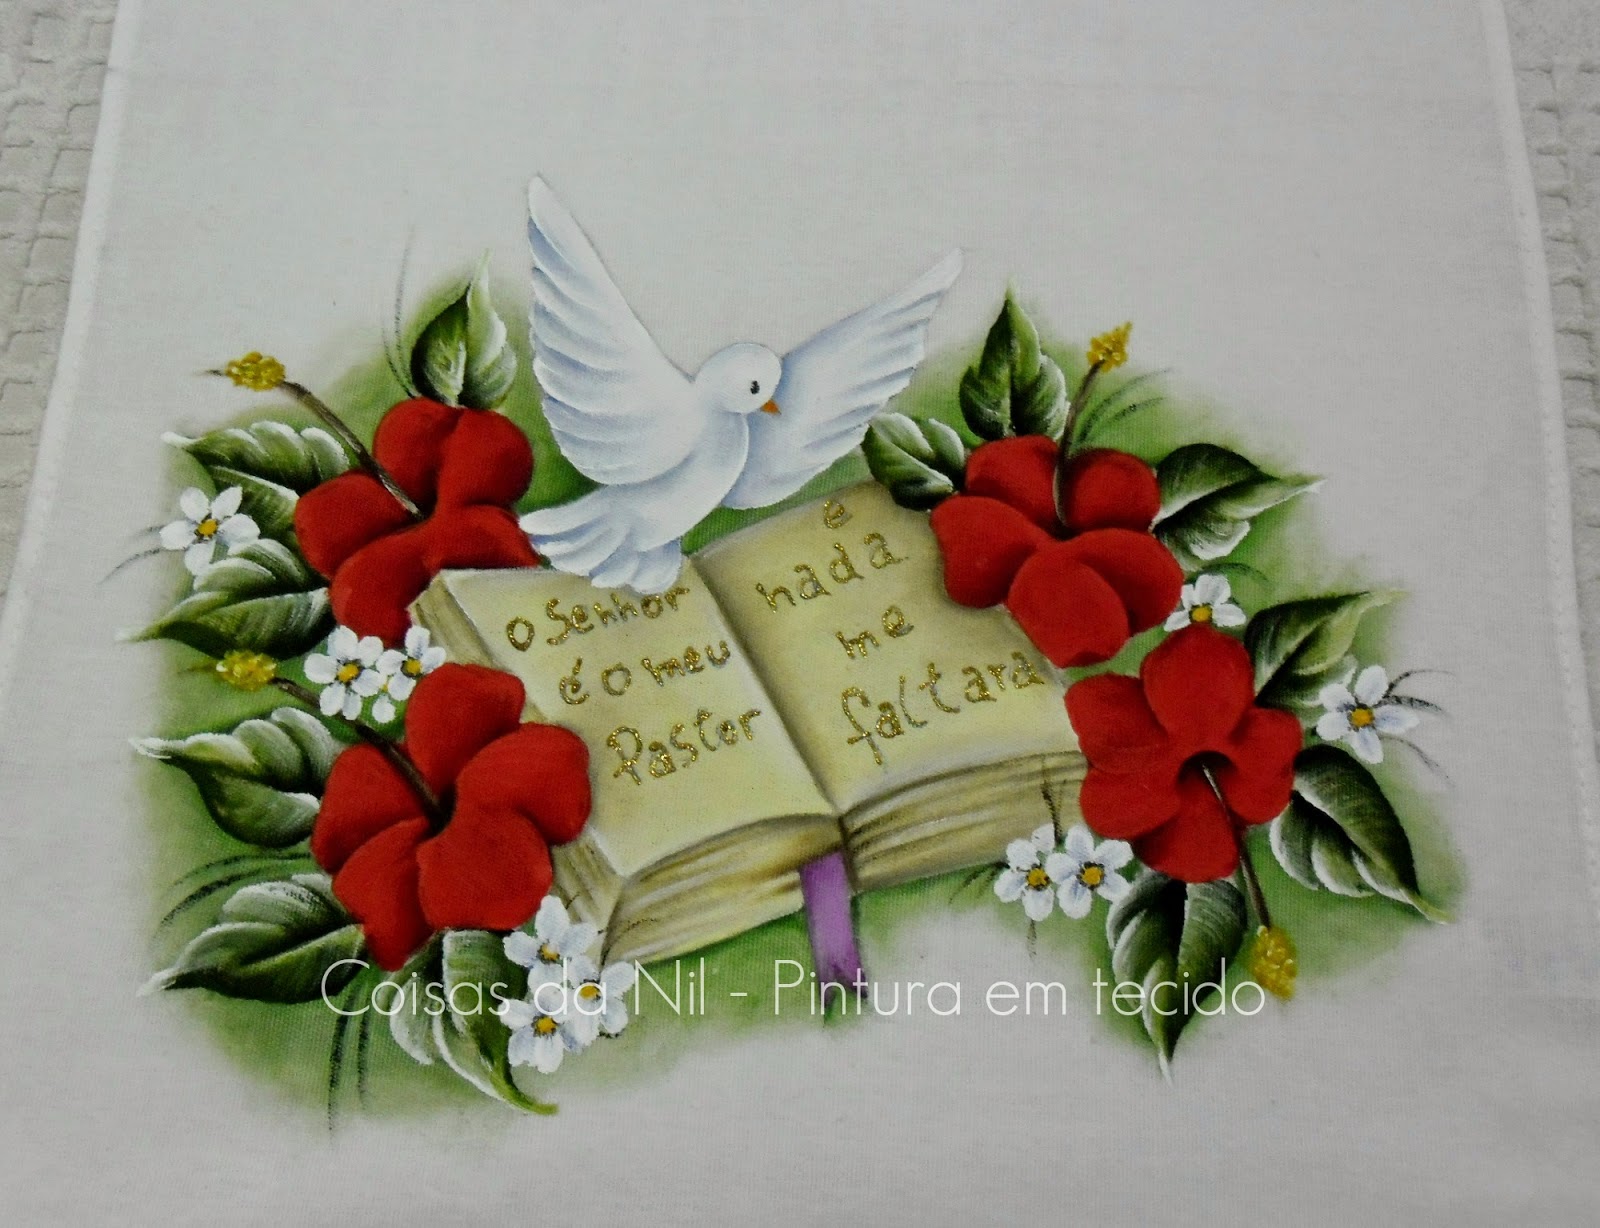 pintura em tecido com tema religioso da pomba do espirito santo, biblia, o salmo 23 e flores hibiscos